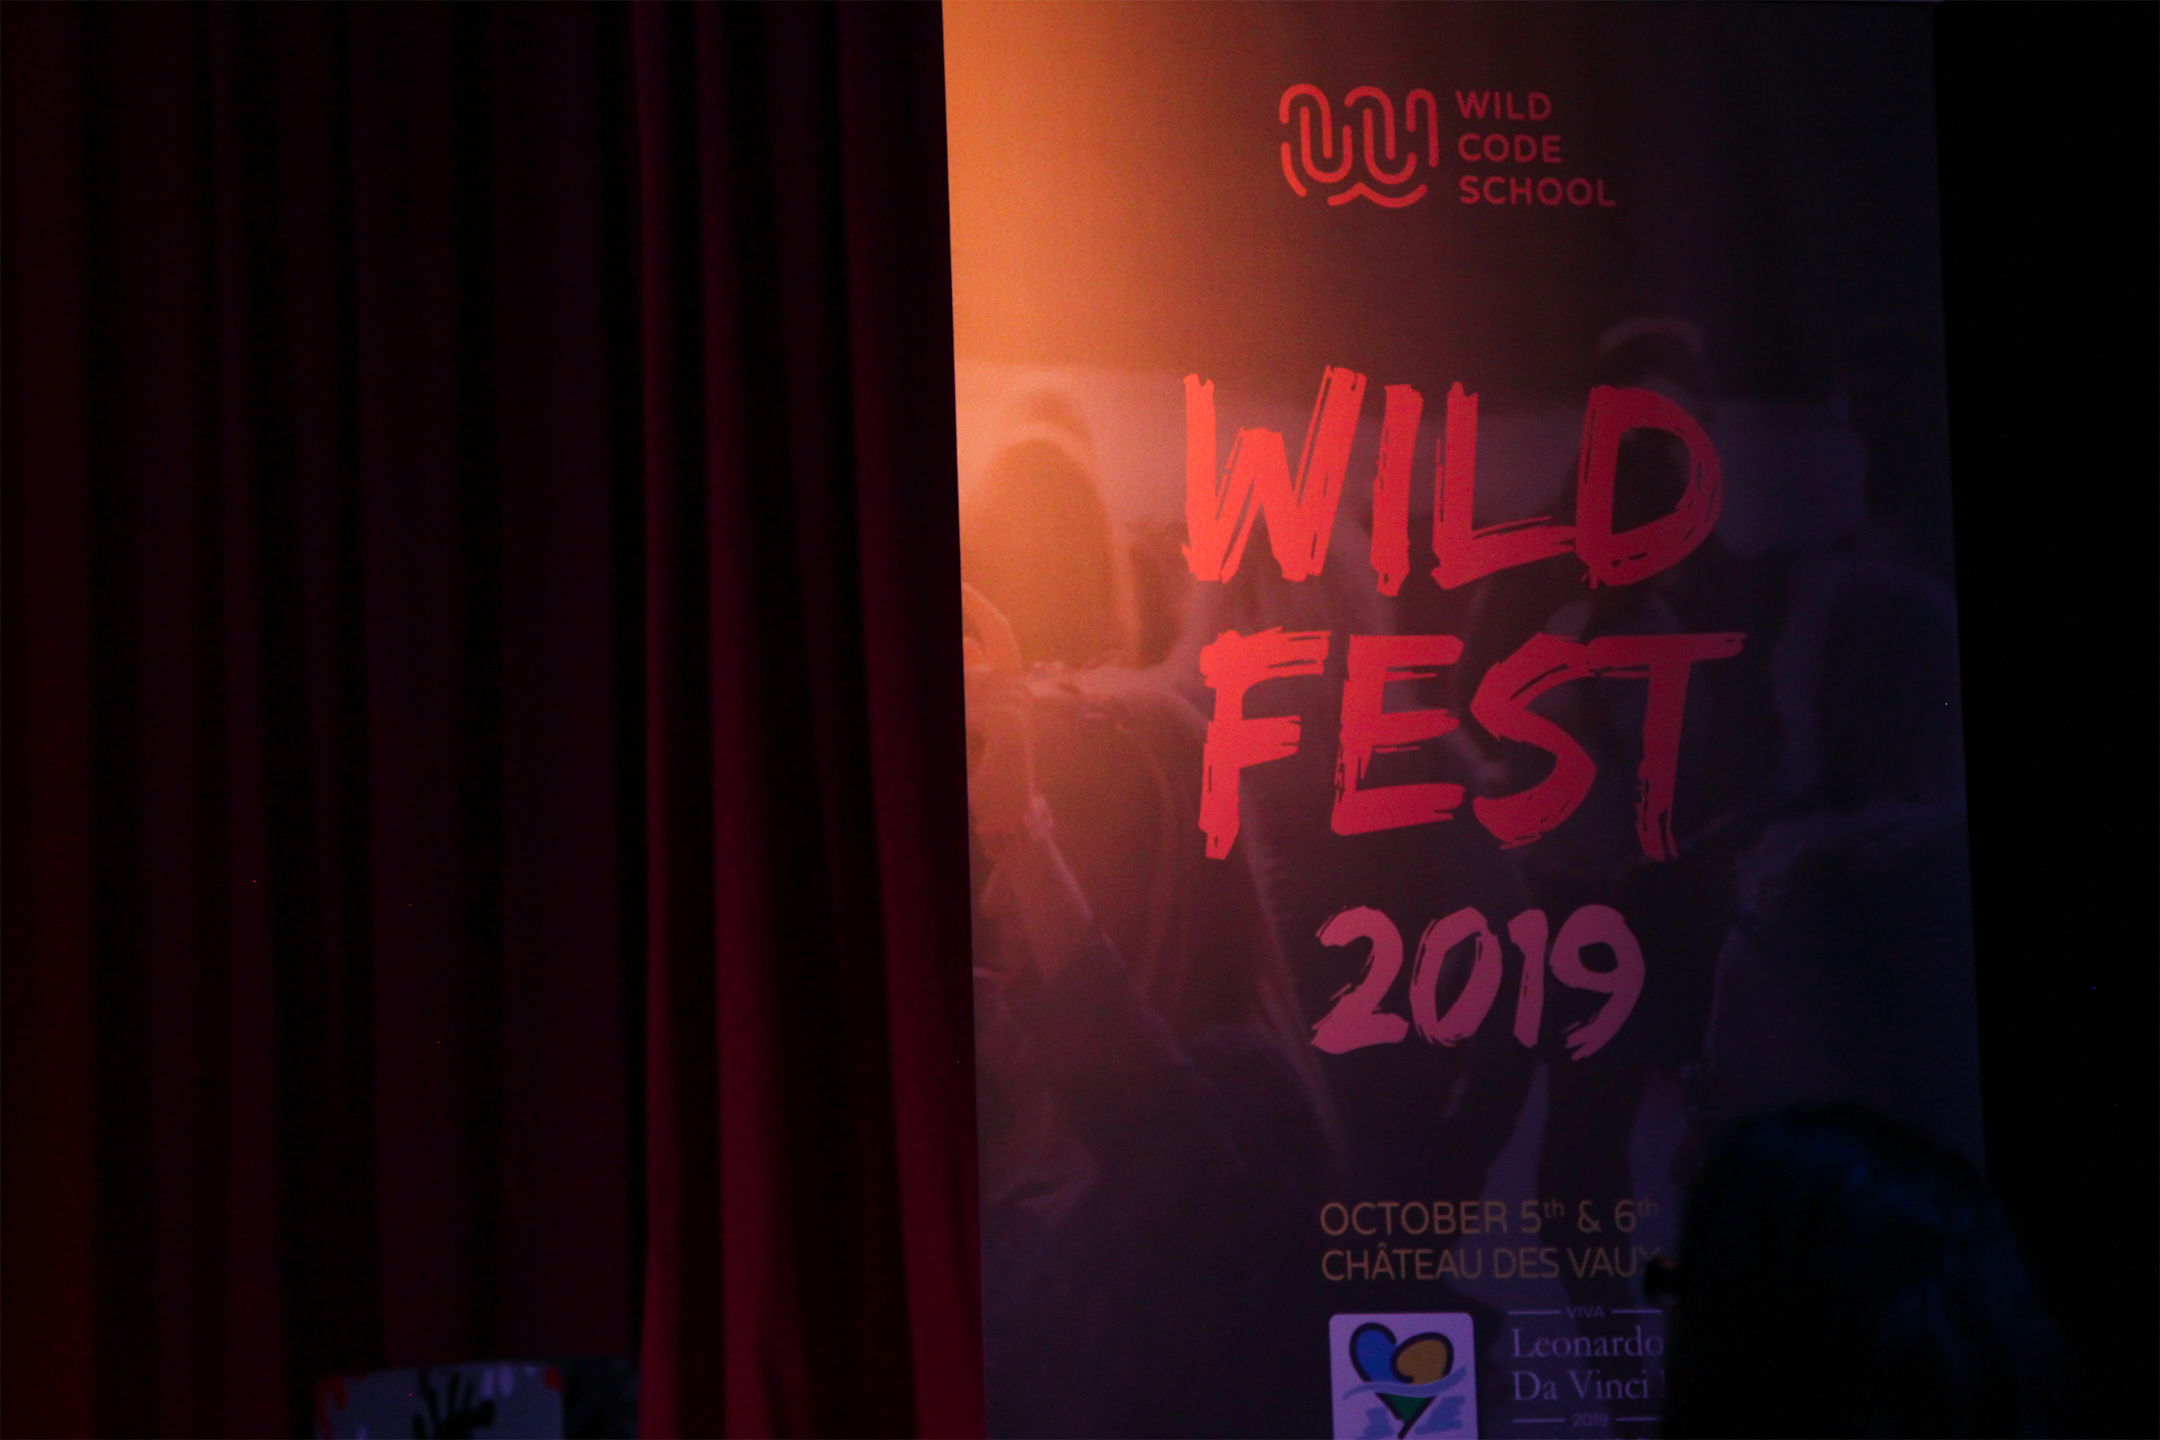 Photographie du kakemono de l’événement Wild fest devant un rideau rouge.